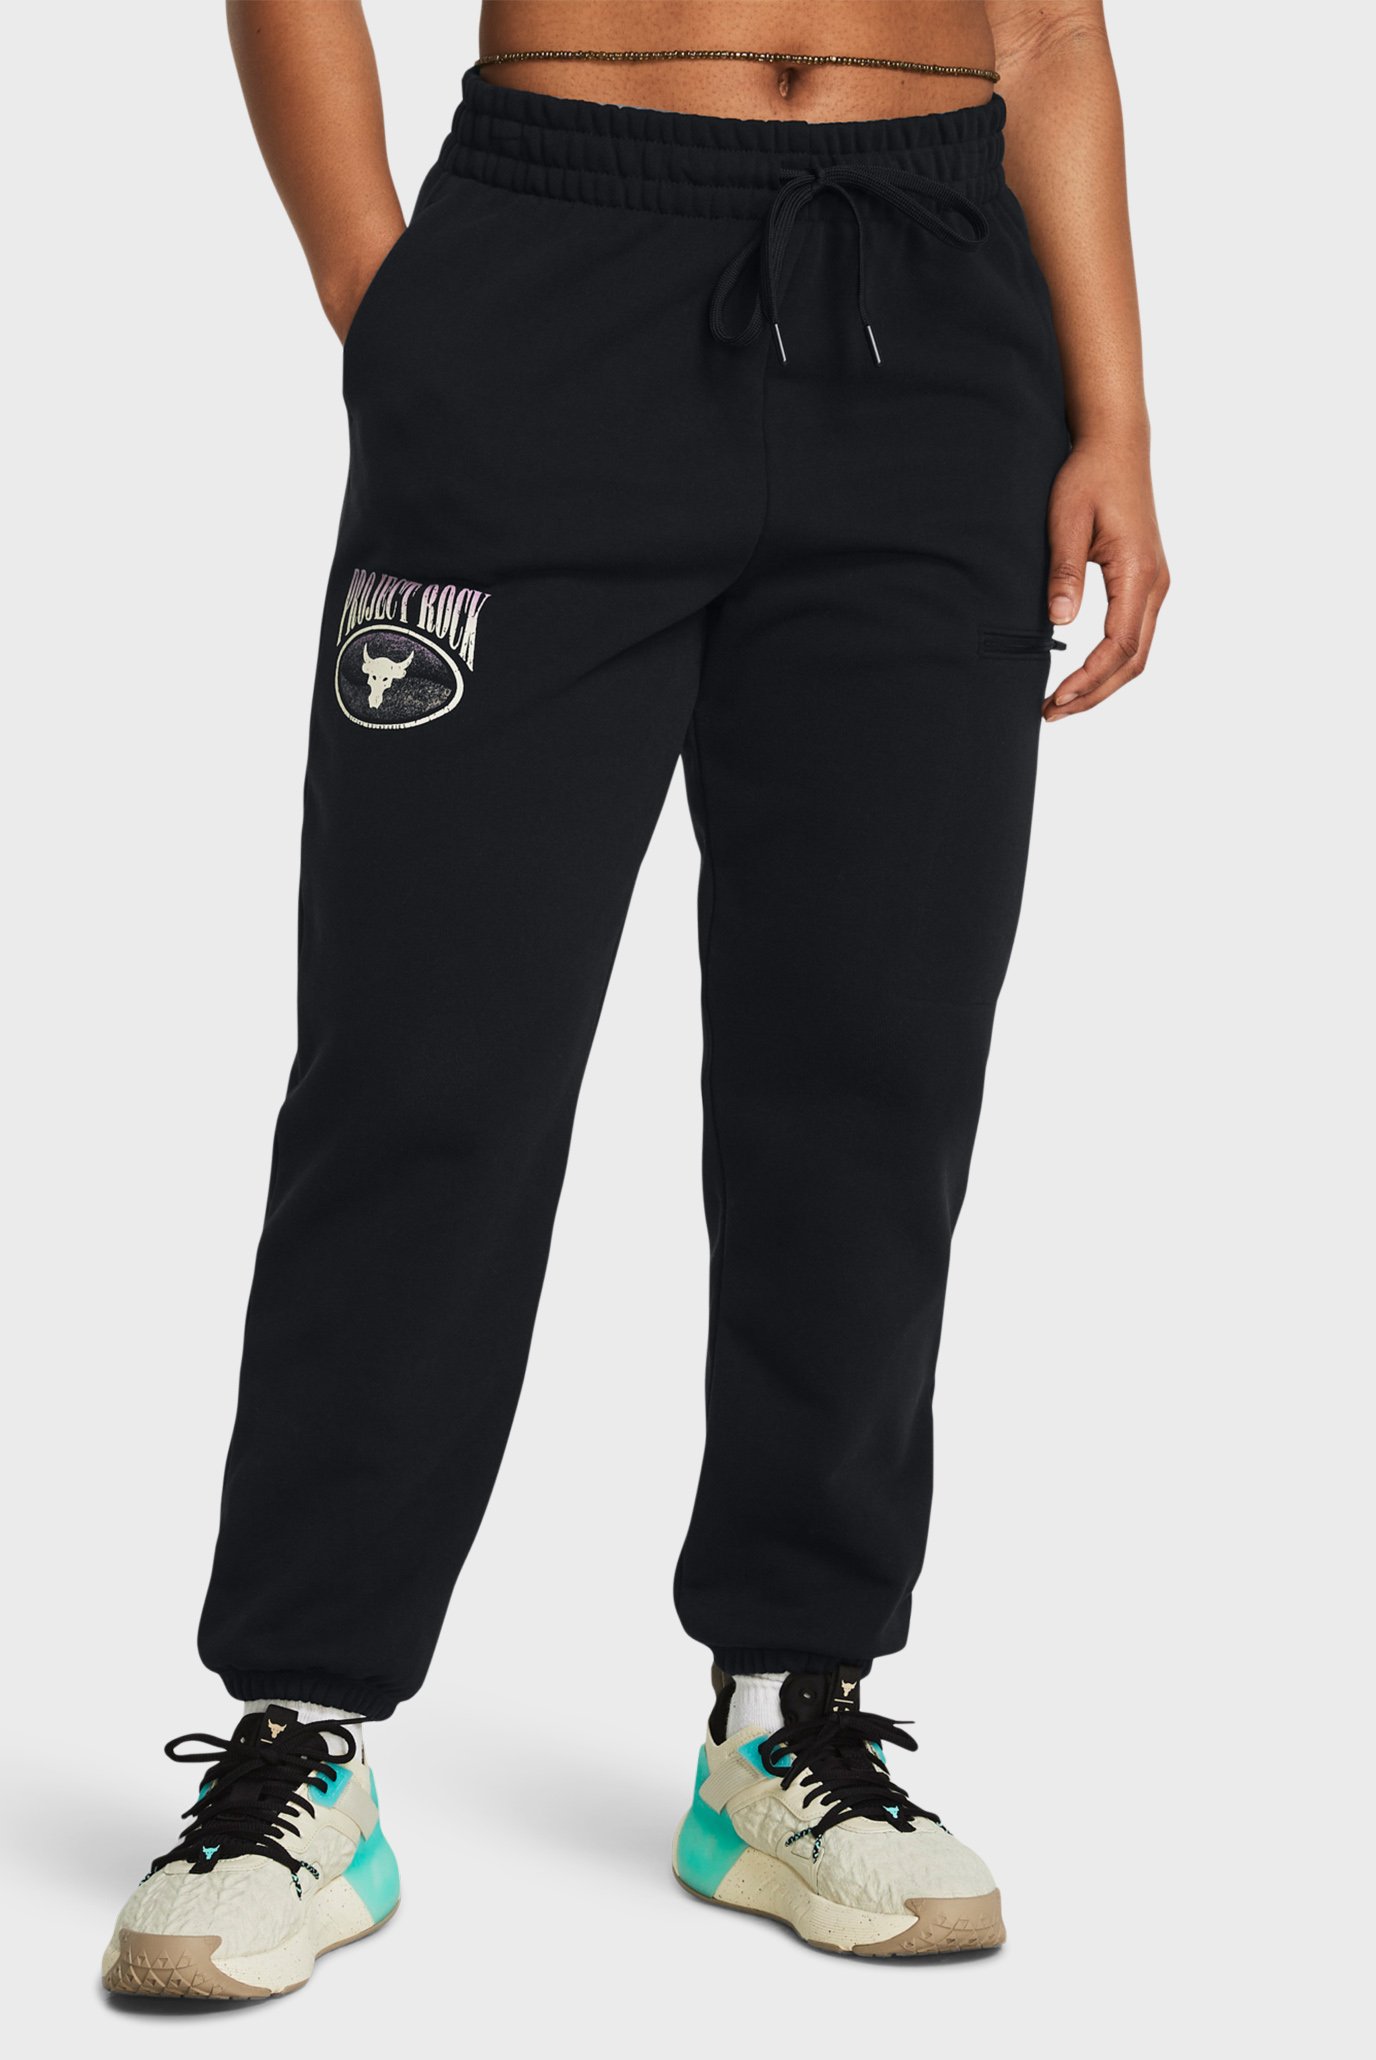 Жіночі чорні спортивні штани Pjt Rck Q1 HW Terry Pant 1